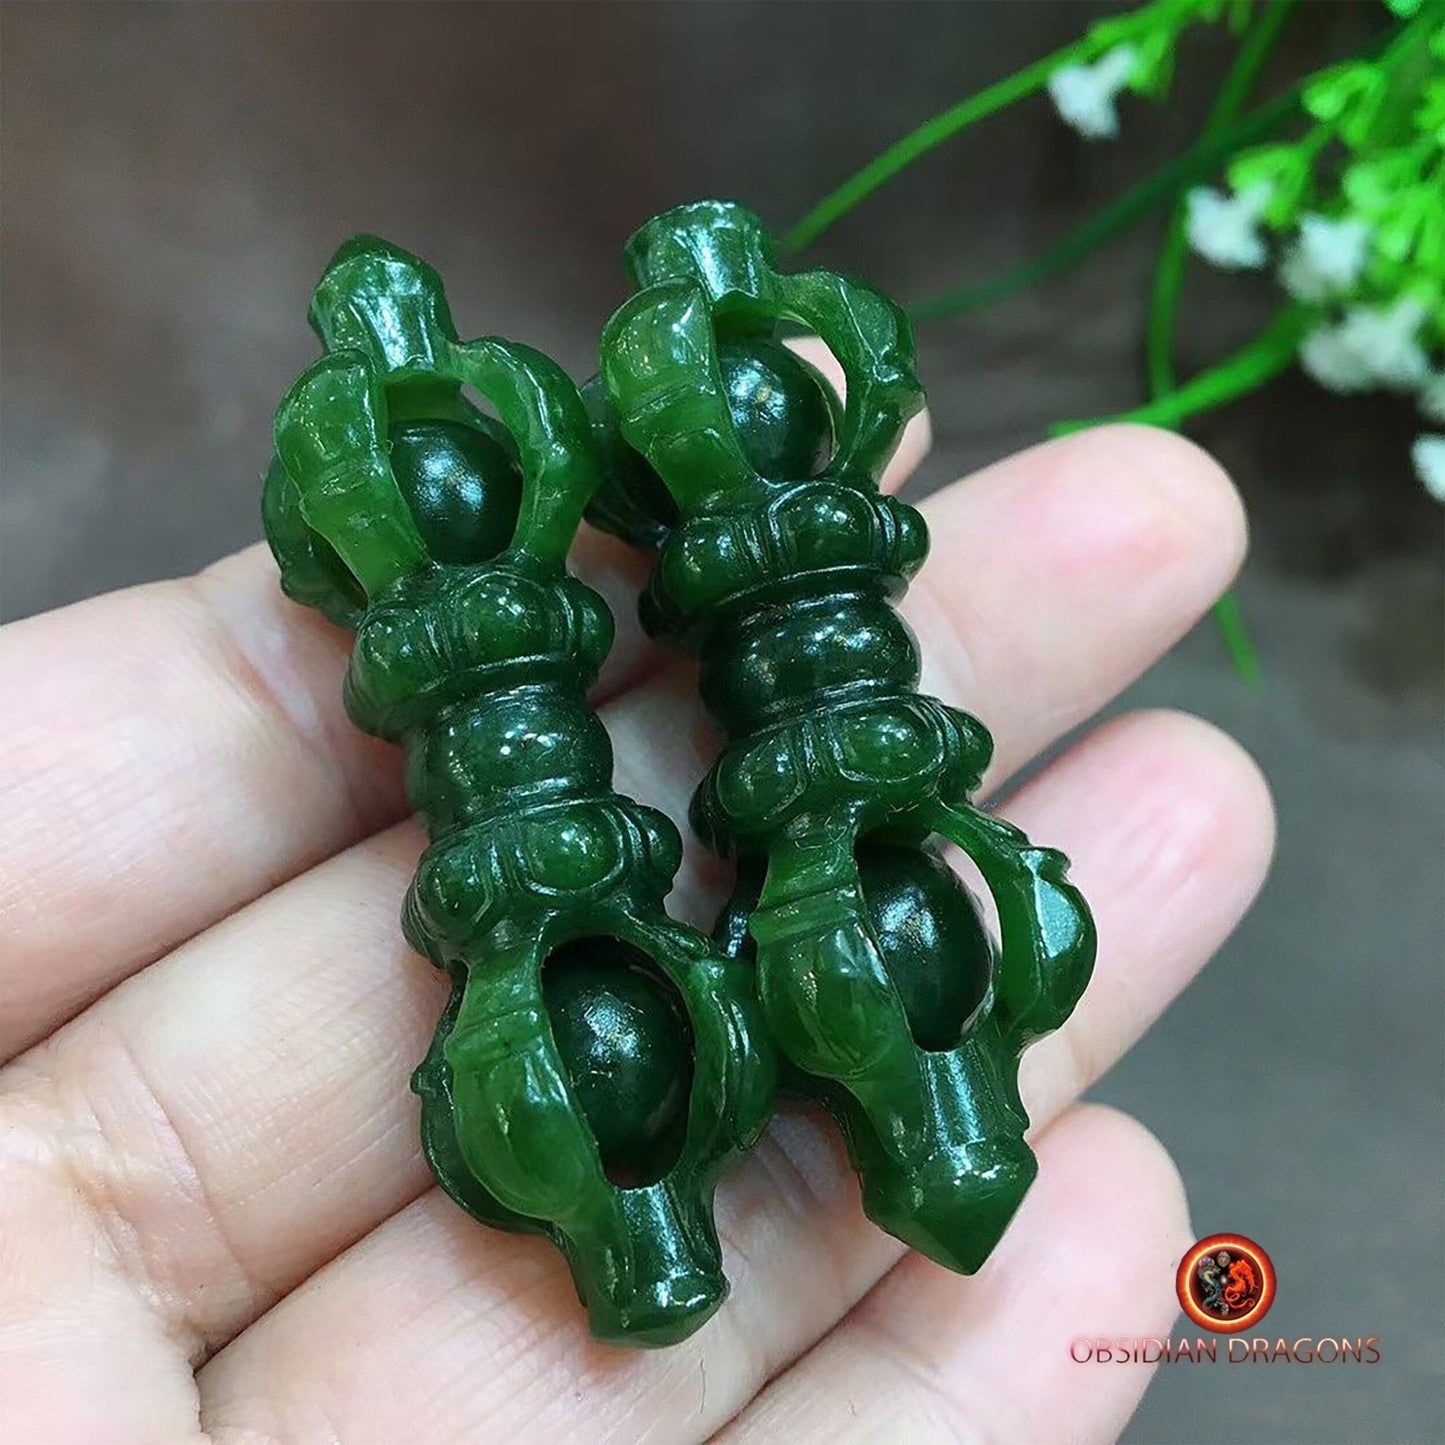 Vajra, dorje objet de culte bouddhiste vajrayana. Sculpté artisanalement sur du jade polaire. Pièce rare - obsidian dragon